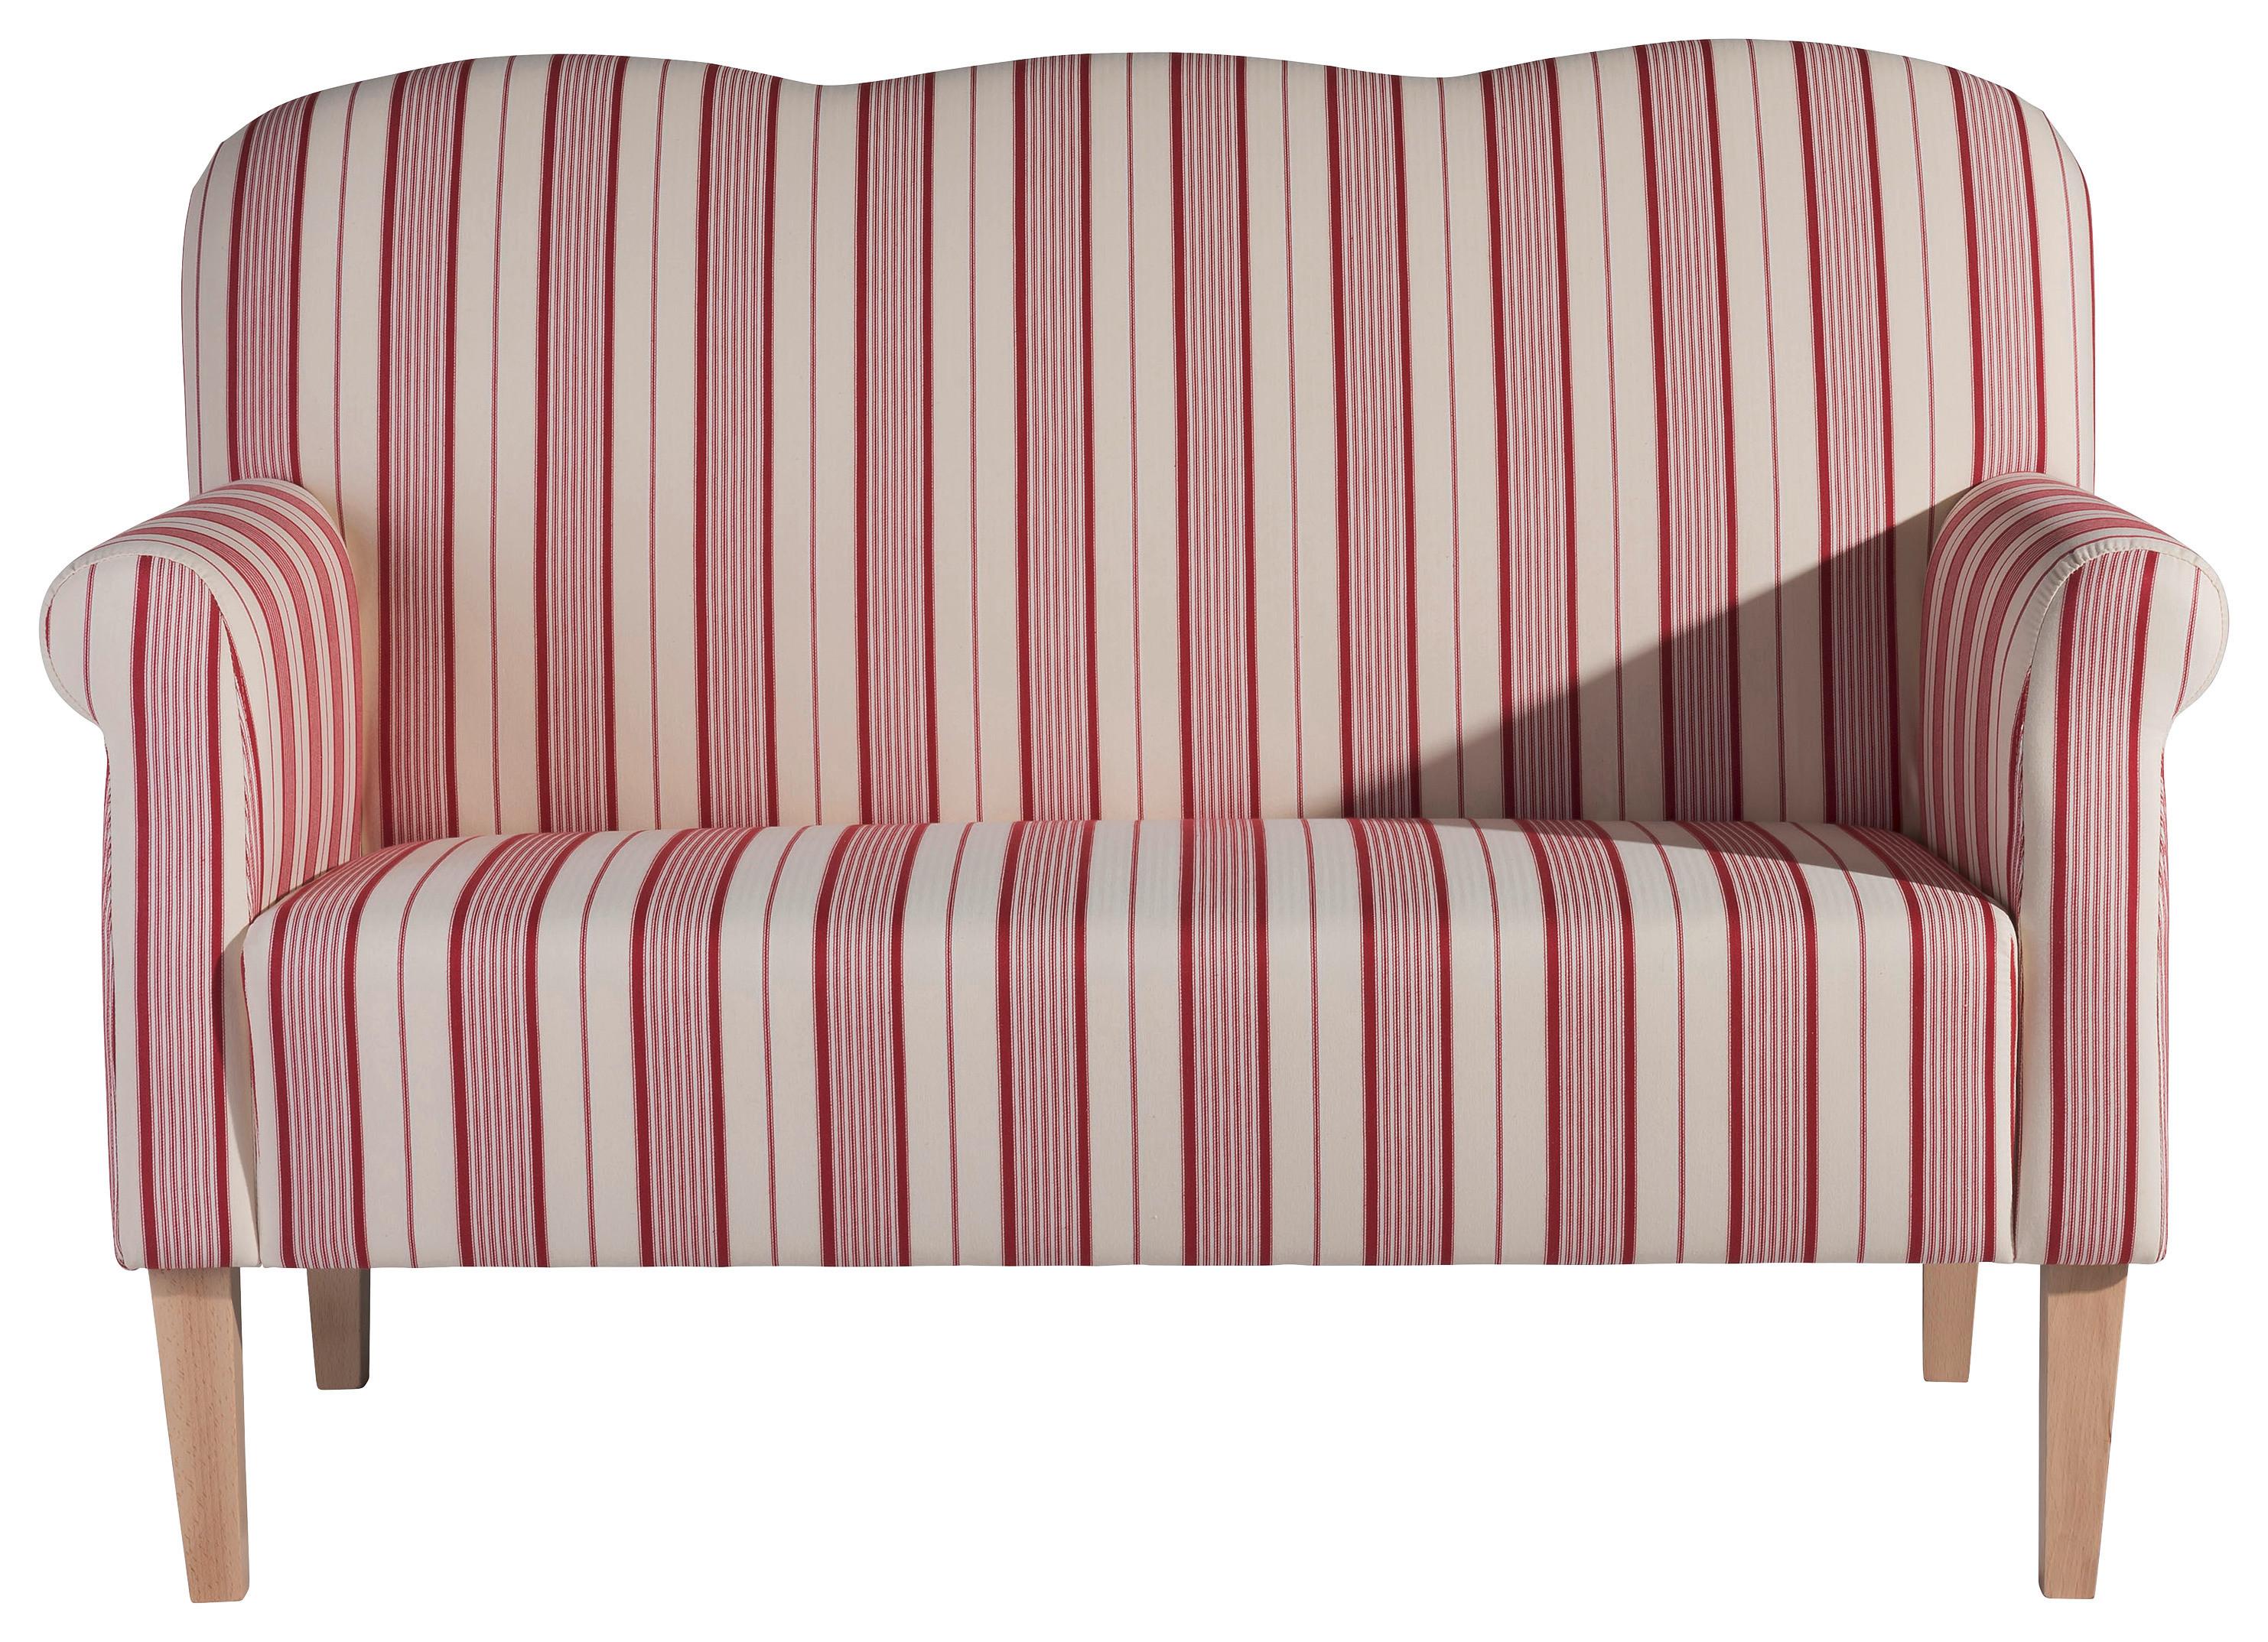 2-Sitzer-Sofa Jule Mit Armlehnen, Rot/Beige - Beige/Rot, Design, Textil (147/103/84cm) - Max Winzer